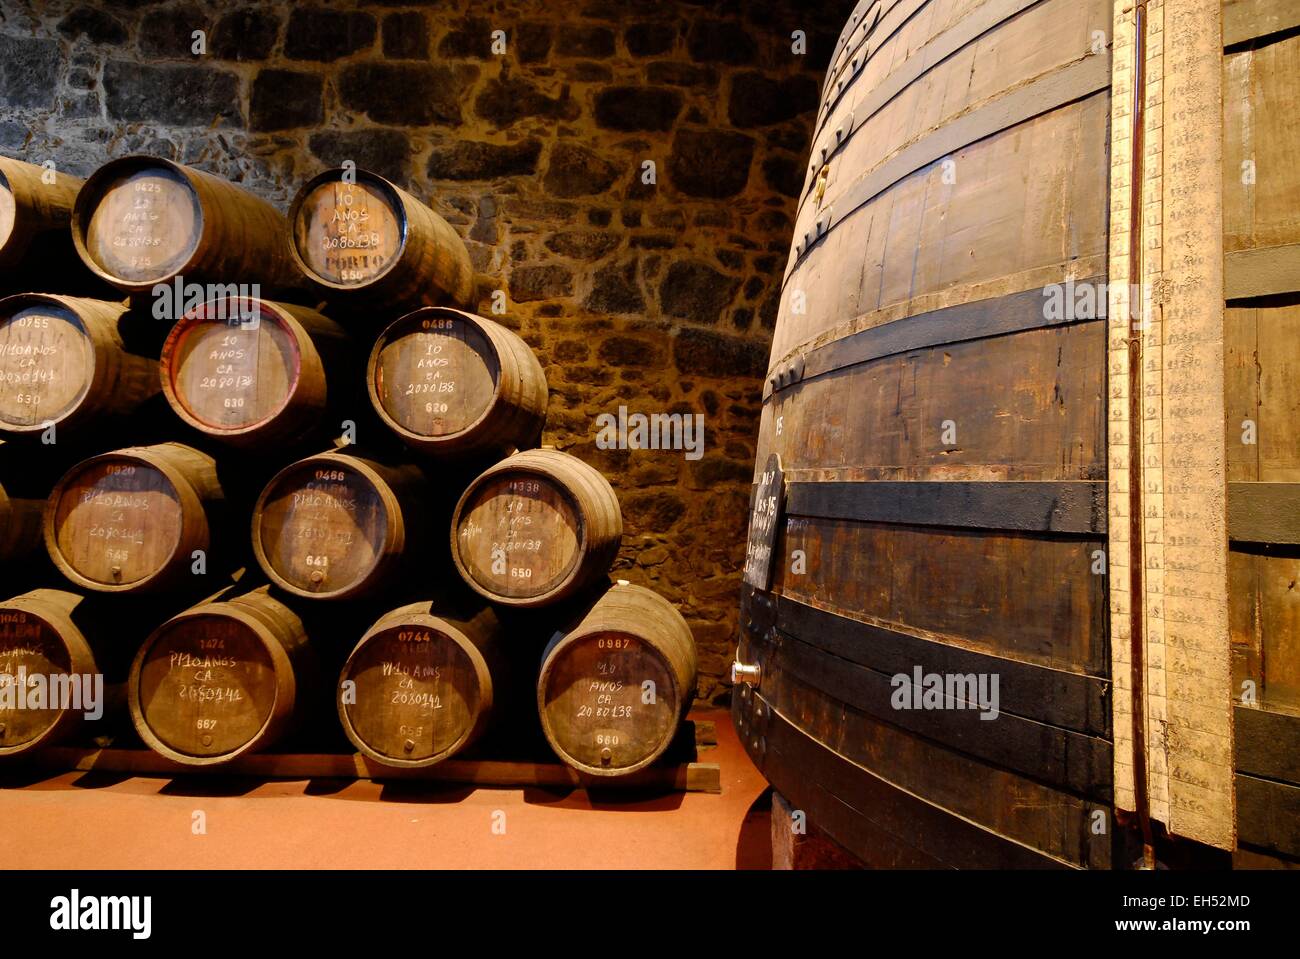 Portugal, North Region, Porto, Vila Nova de Gaia district, barrels of Porto wine in the cellars of the company Calem Stock Photo